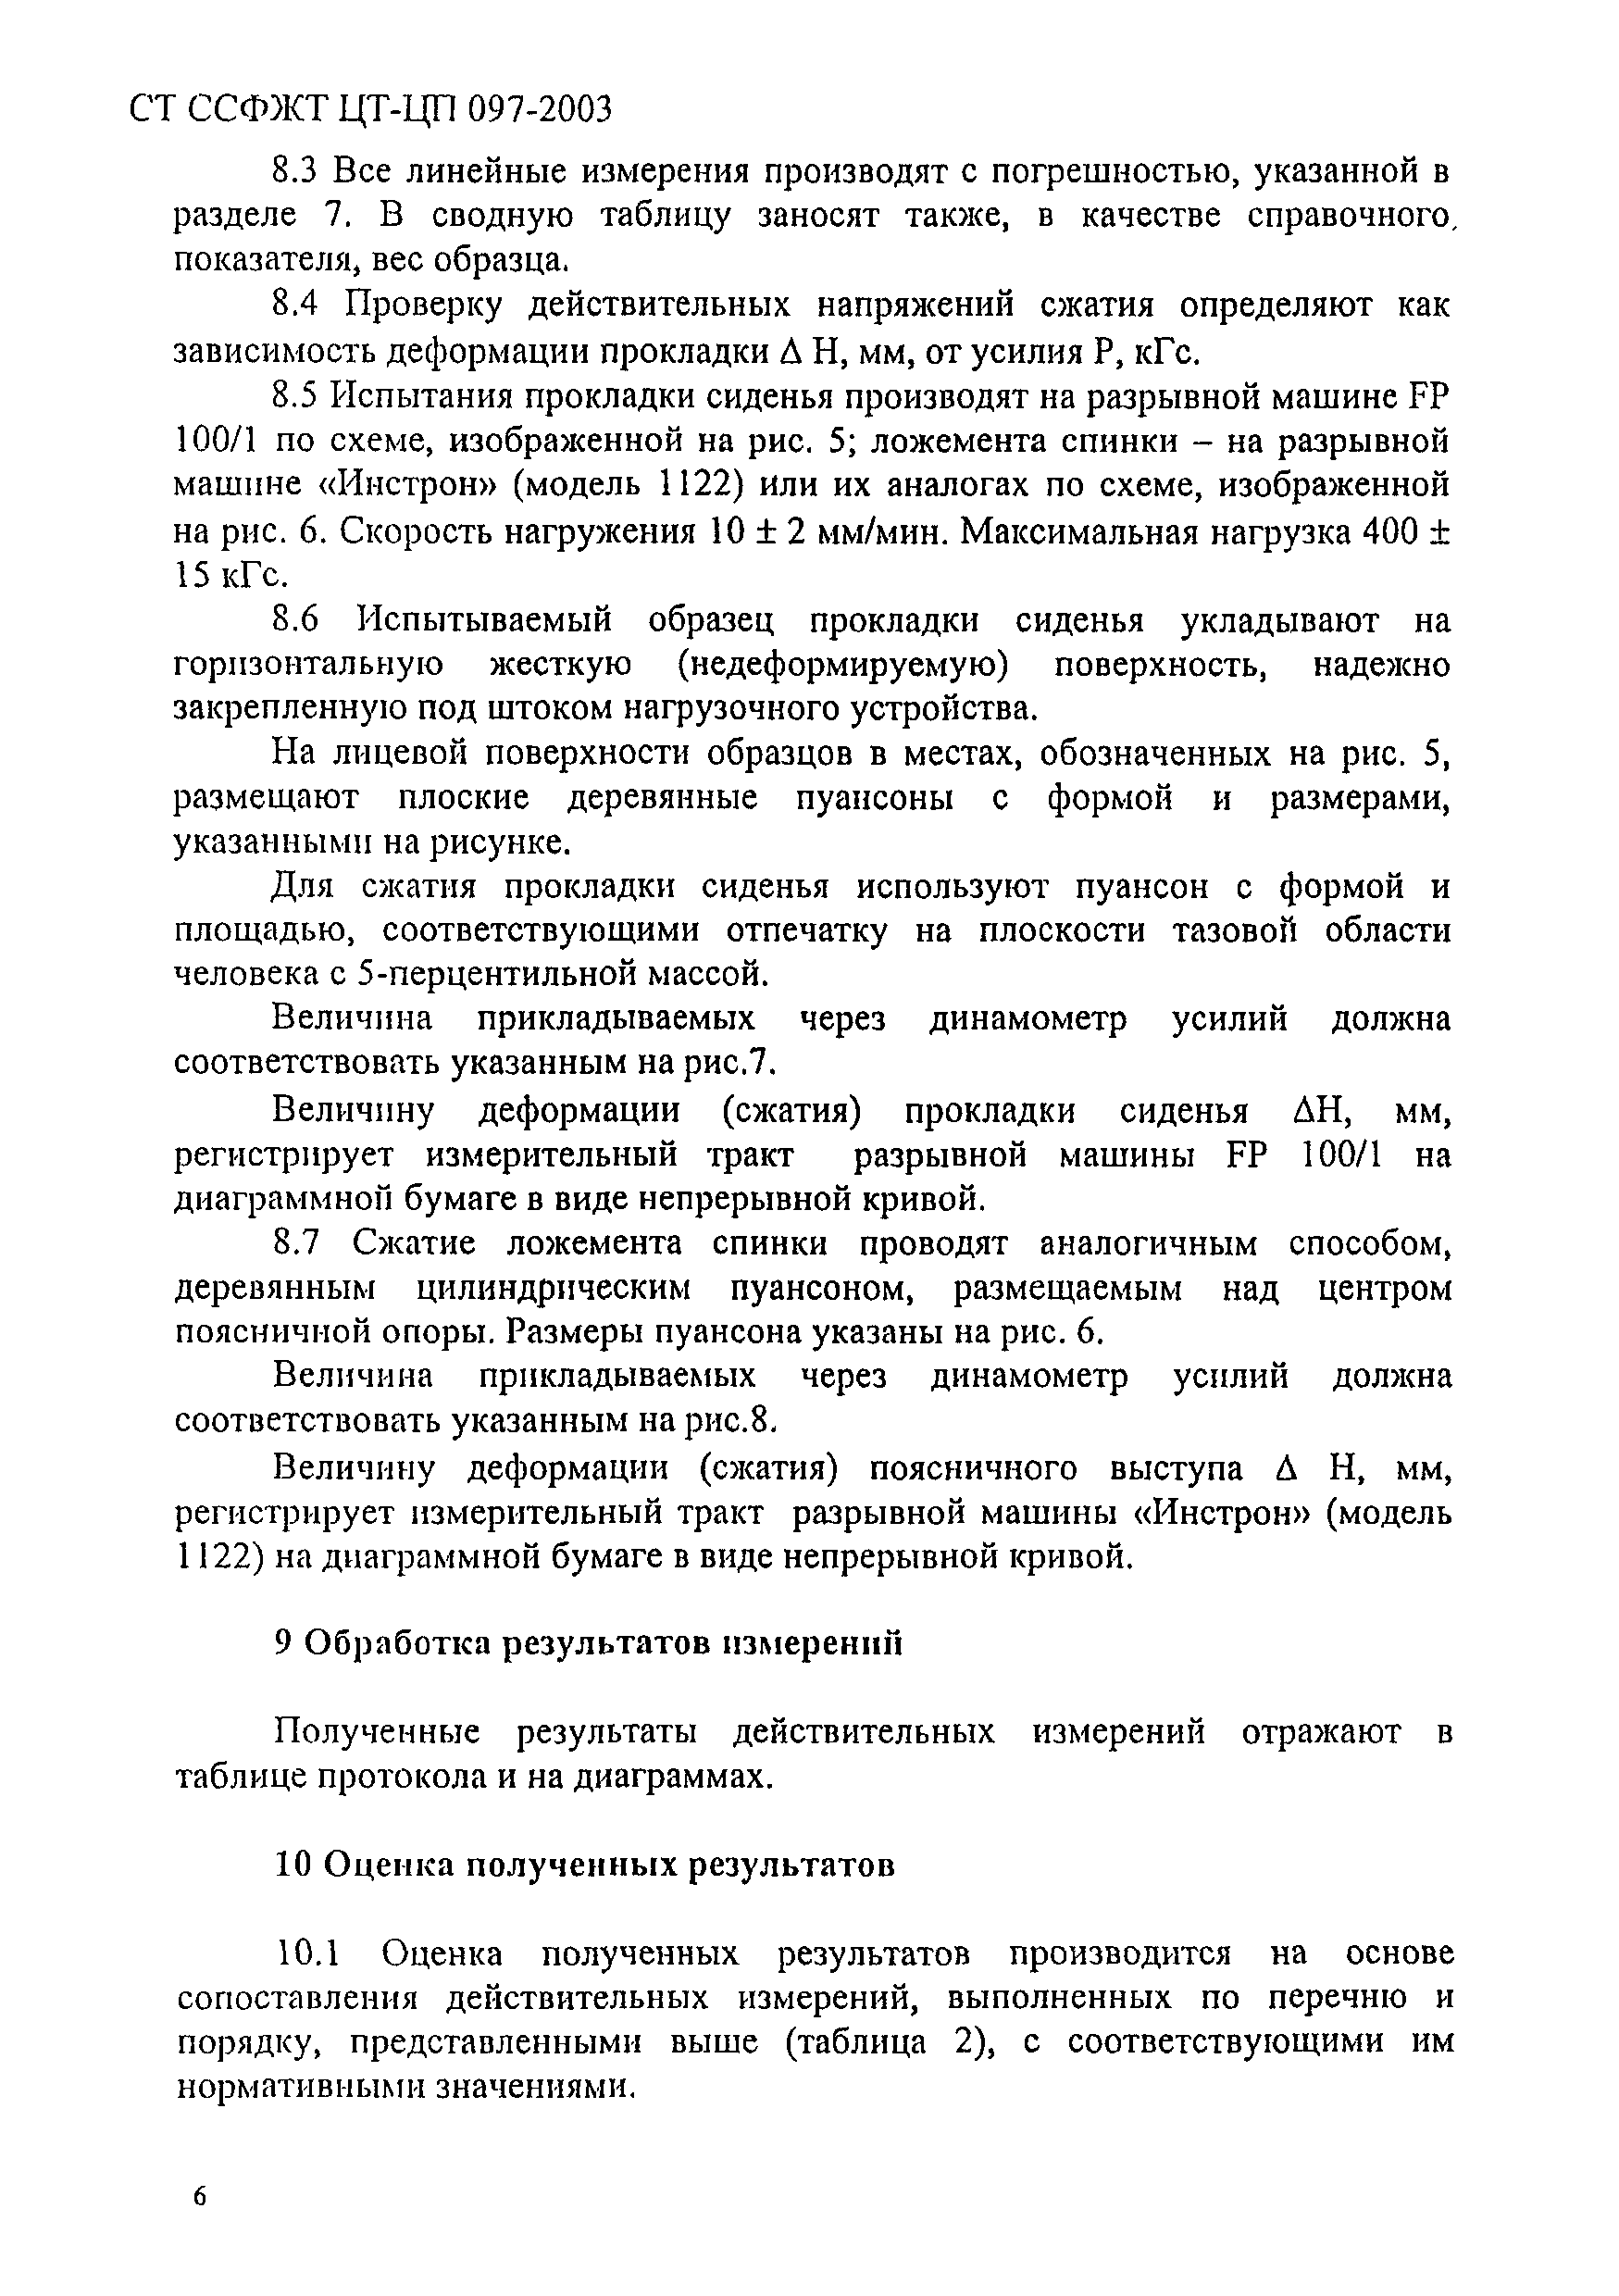 СТ ССФЖТ ЦТ-ЦП 097-2003